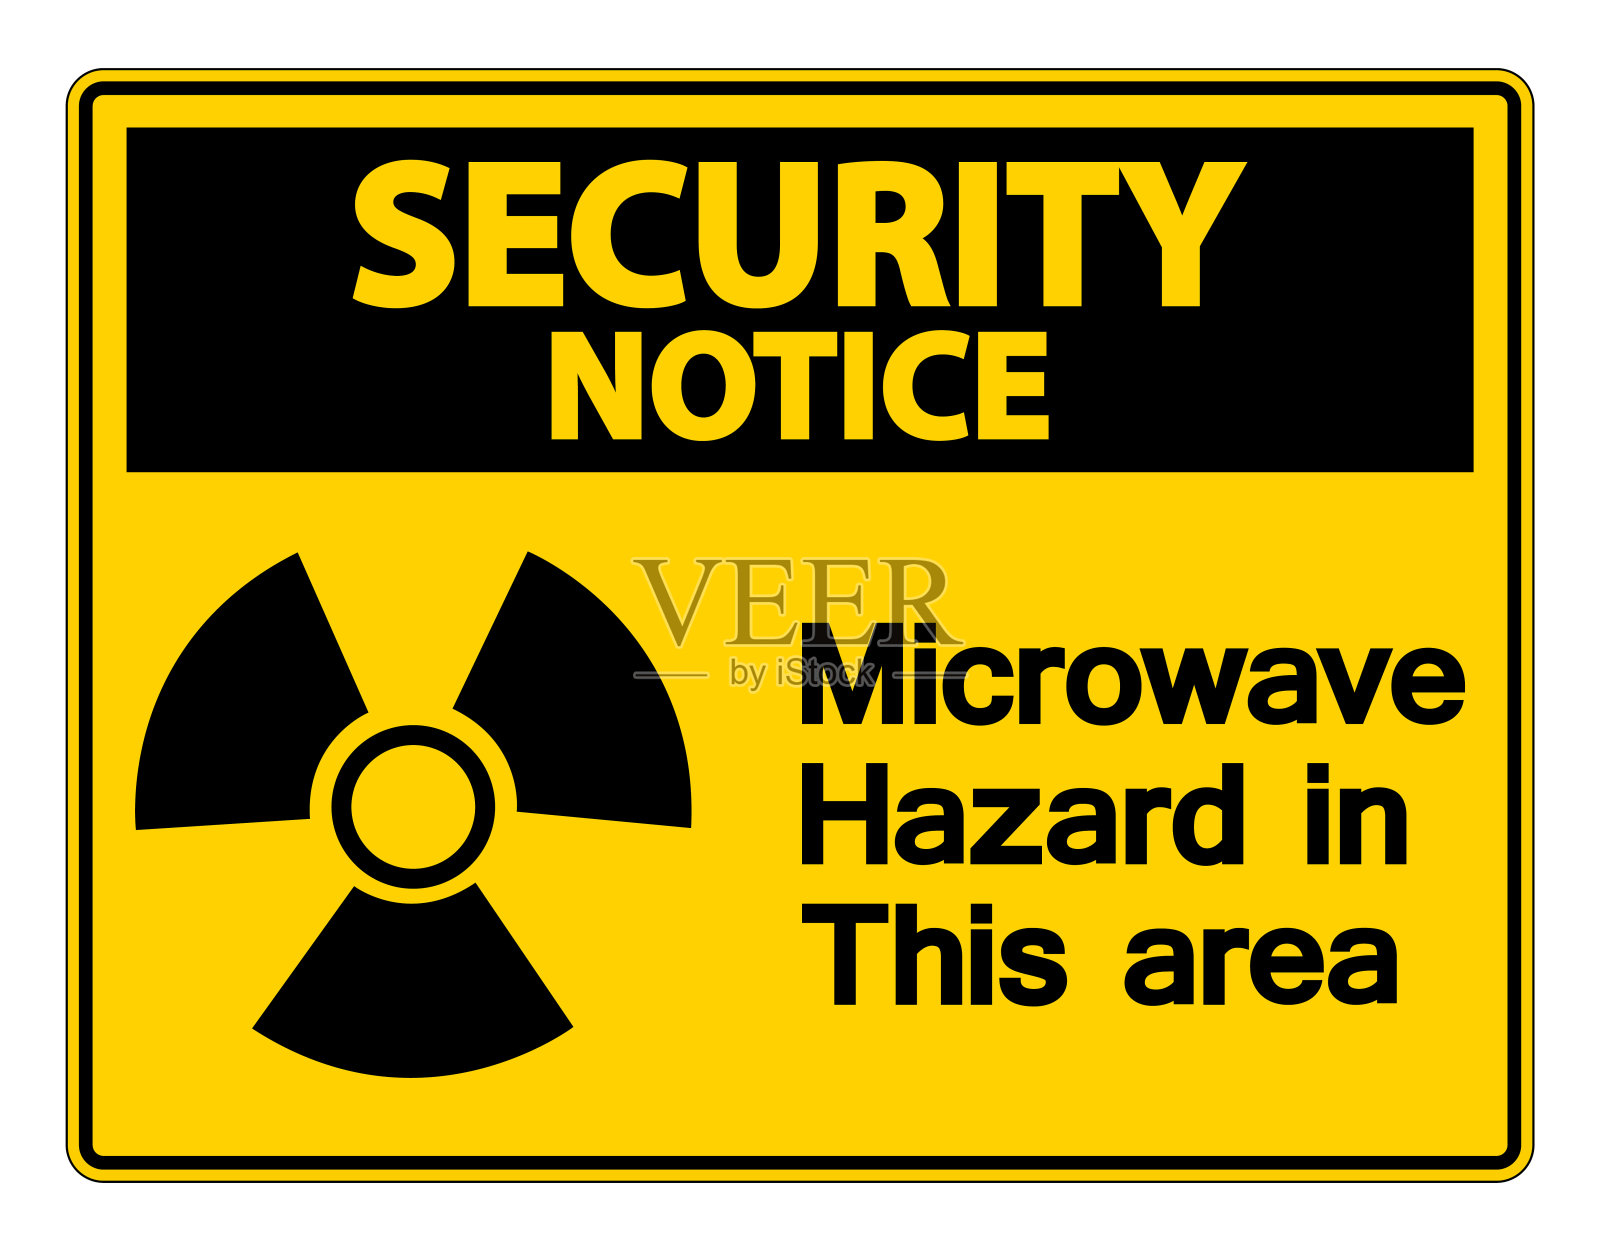 安全通知微波危险标志在白色背景插画图片素材